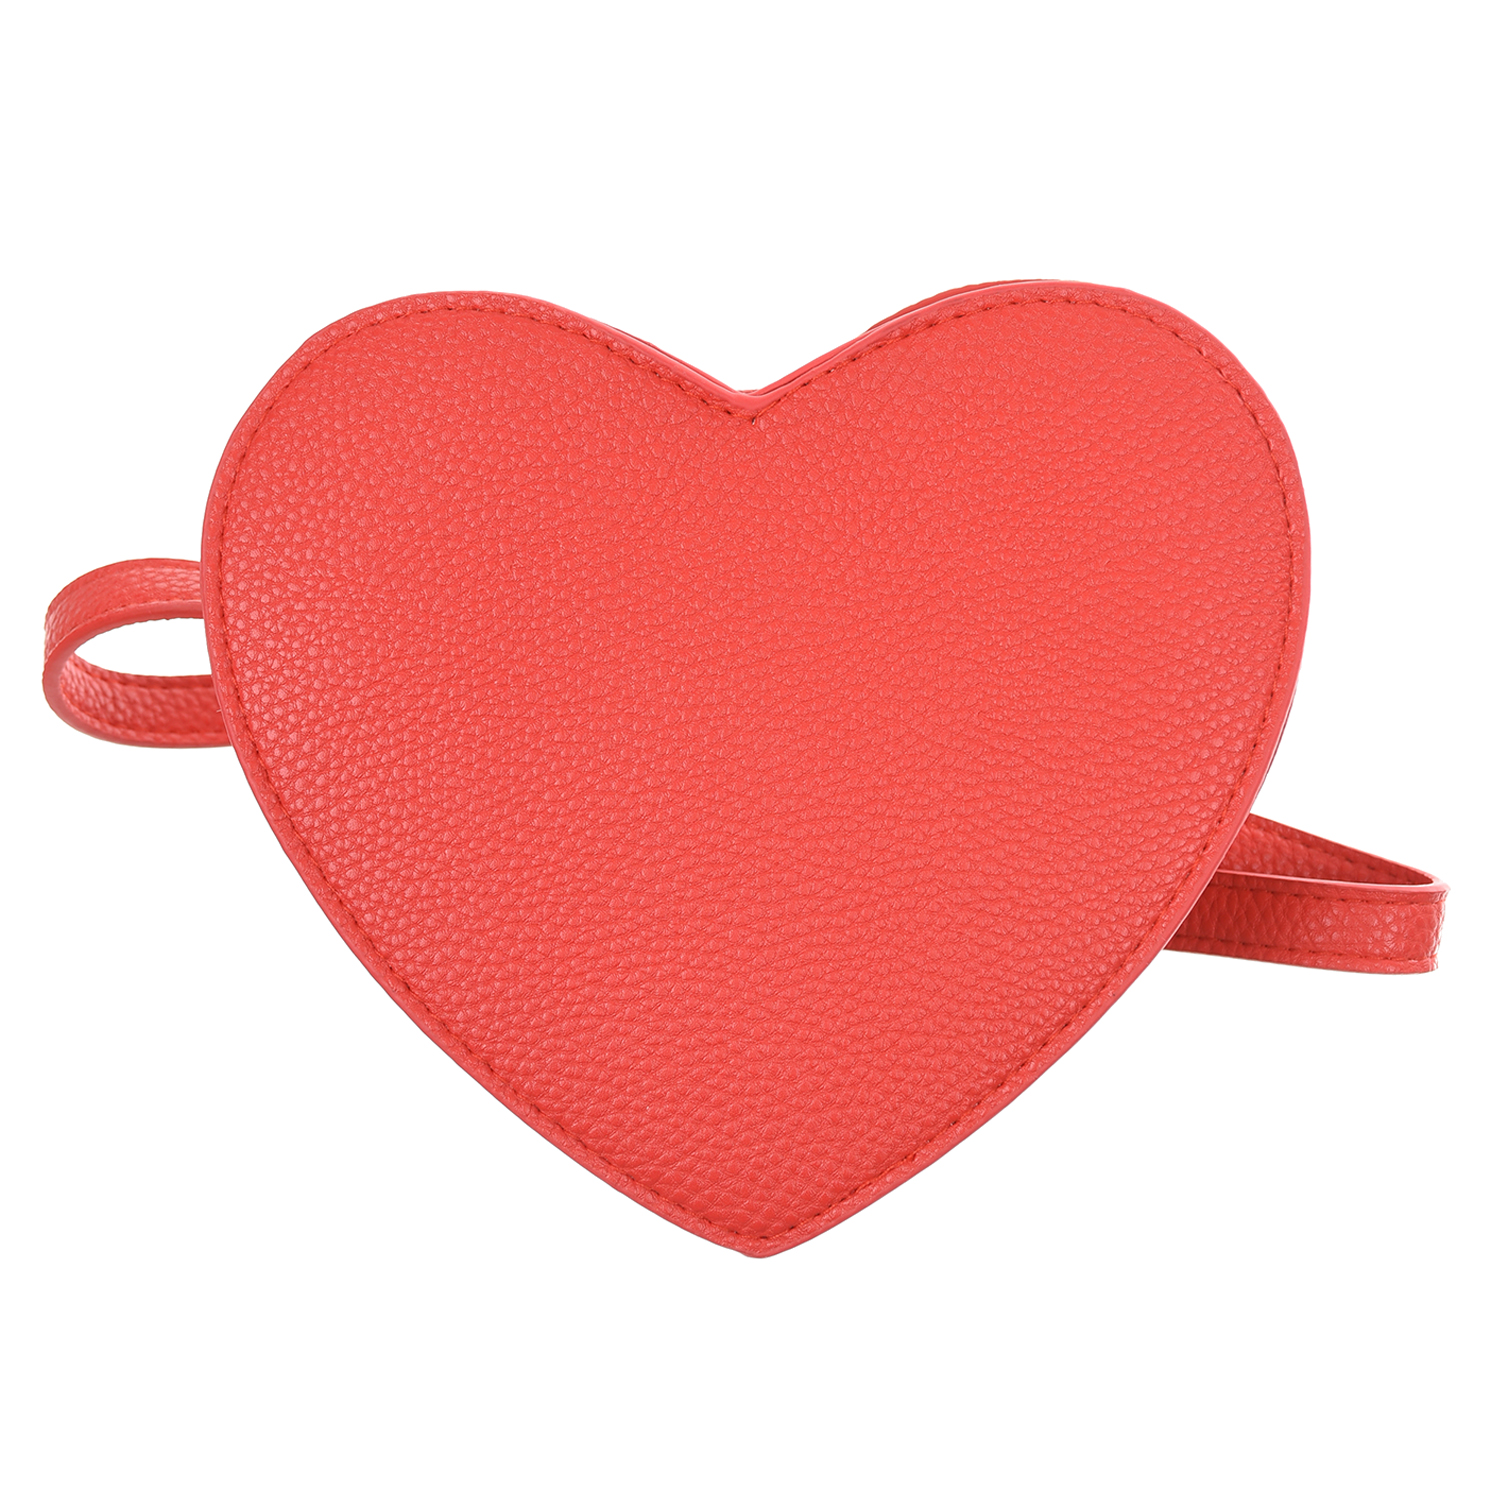 Красная сумка в форме сердца,14x18x4,5 см Molo детская, размер unica, цвет красный - фото 3